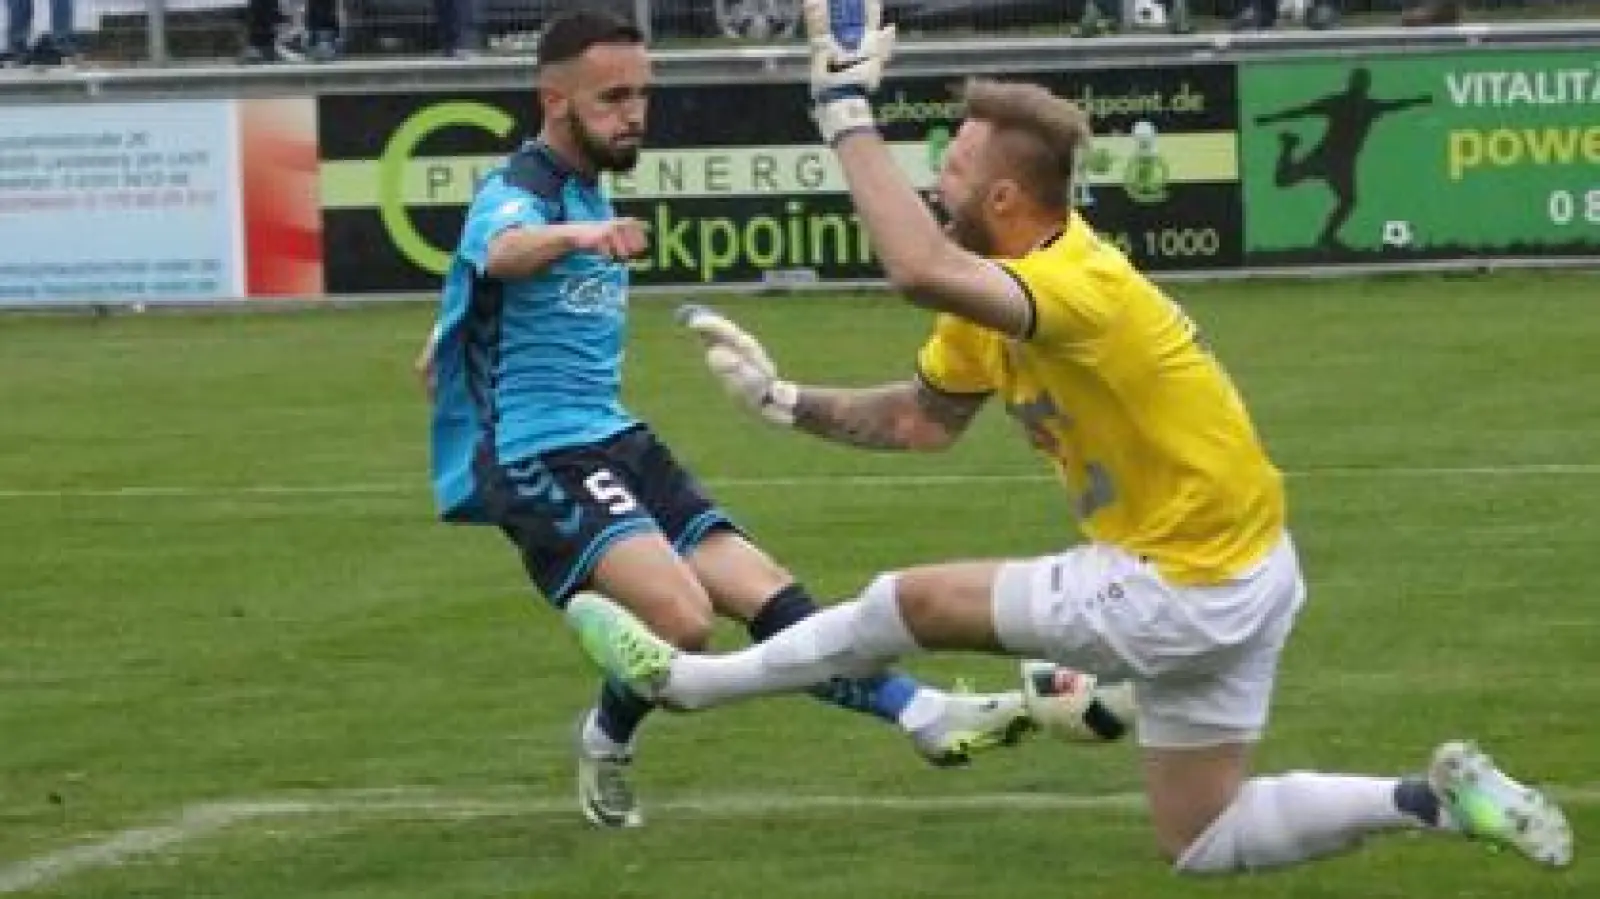 Arbnor Sageshi erzielt das 2:0   für den FCP, Landsbergs Keeper Philipp Beigl ist machtlos.	Foto: hok (Foto: hok)